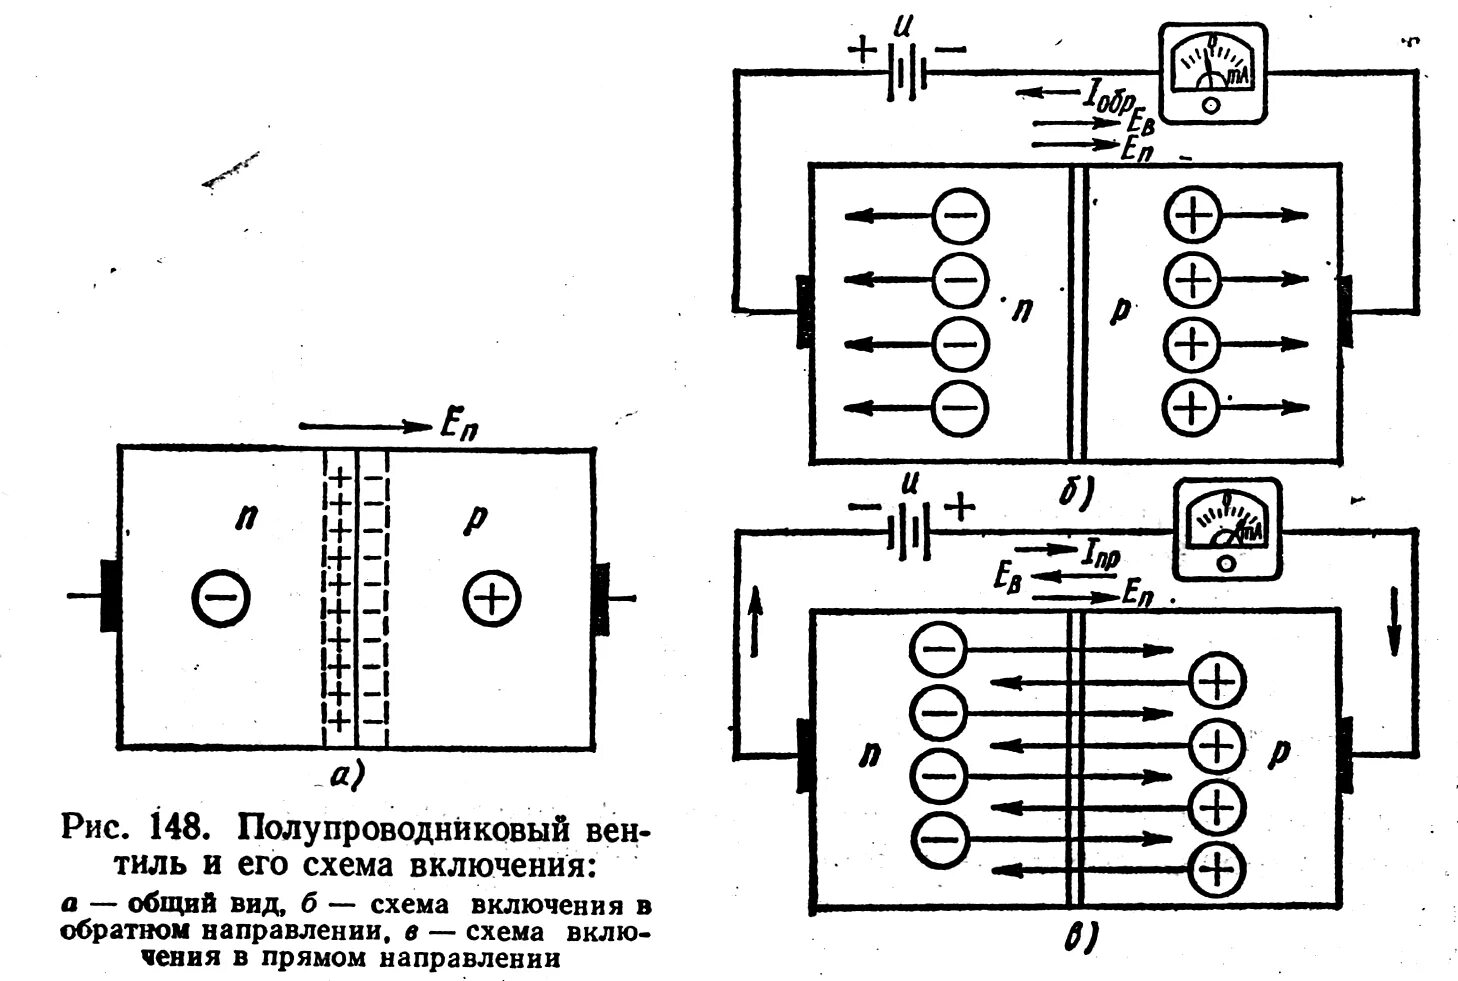 Прямое включение полупроводникового диода. Схема прямого включения полупроводникового диода. Прямое и обратное включение полупроводникового диода. Р-N переход полупроводников приборов.